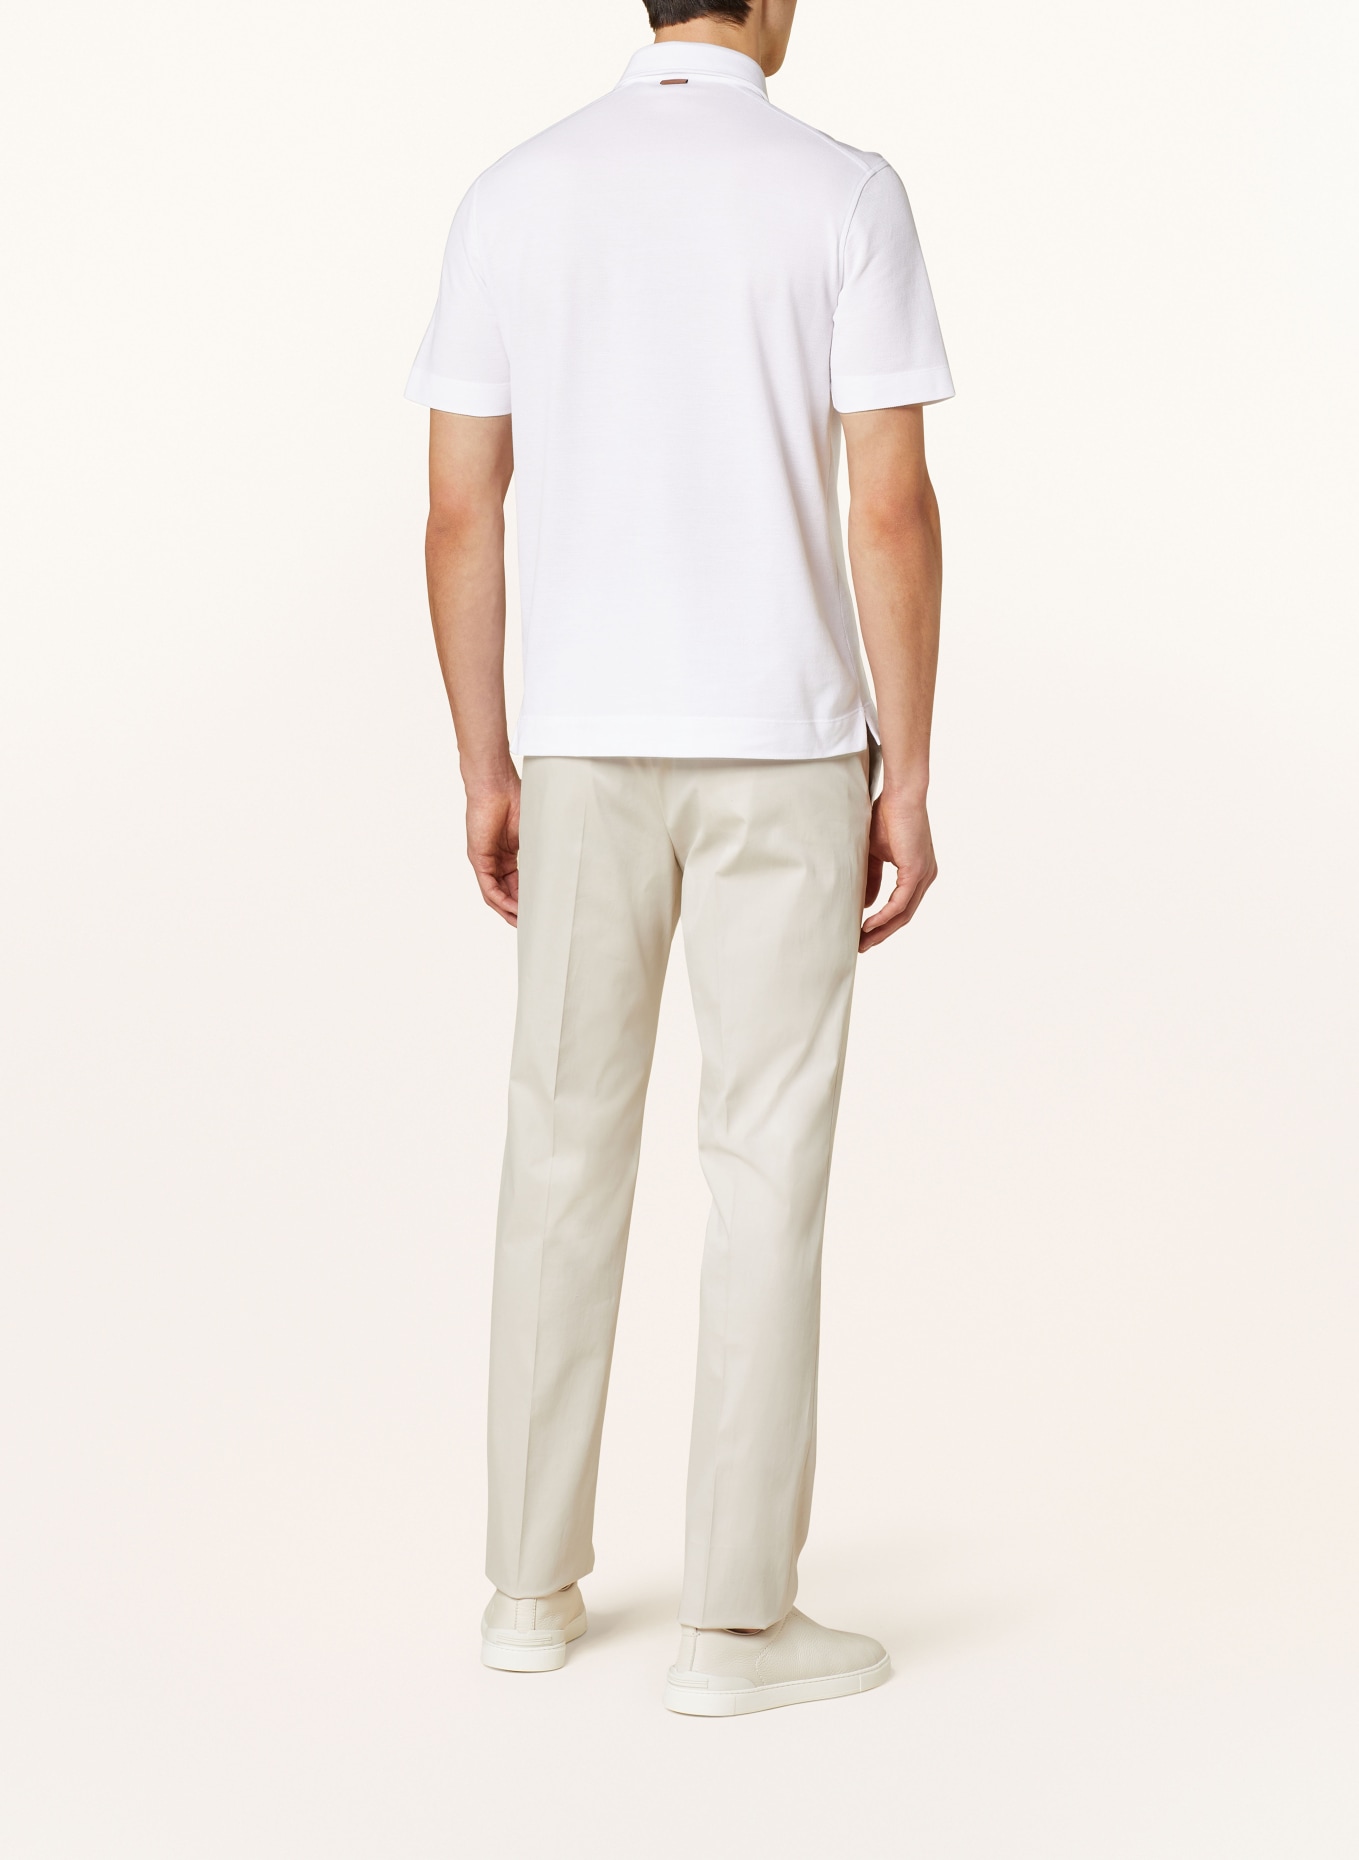 ZEGNA Piqué polo shirt slim fit, Color: WHITE (Image 3)